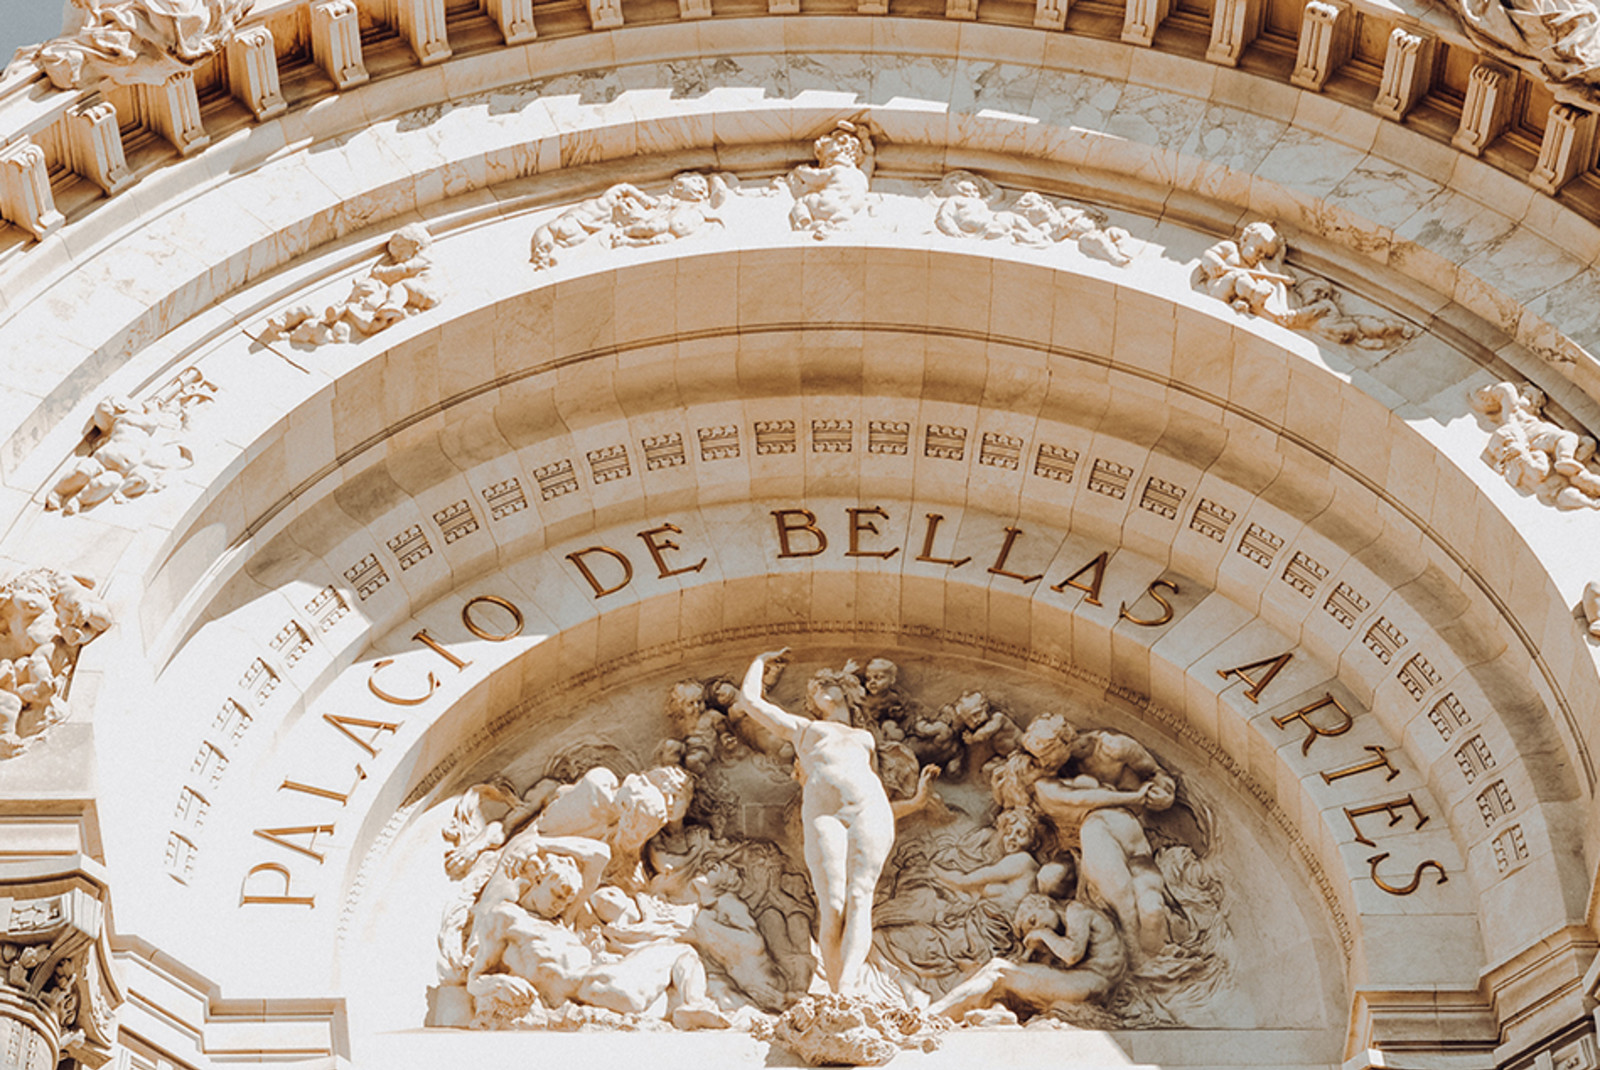 Close up view of the Palacio de Bellas Artes